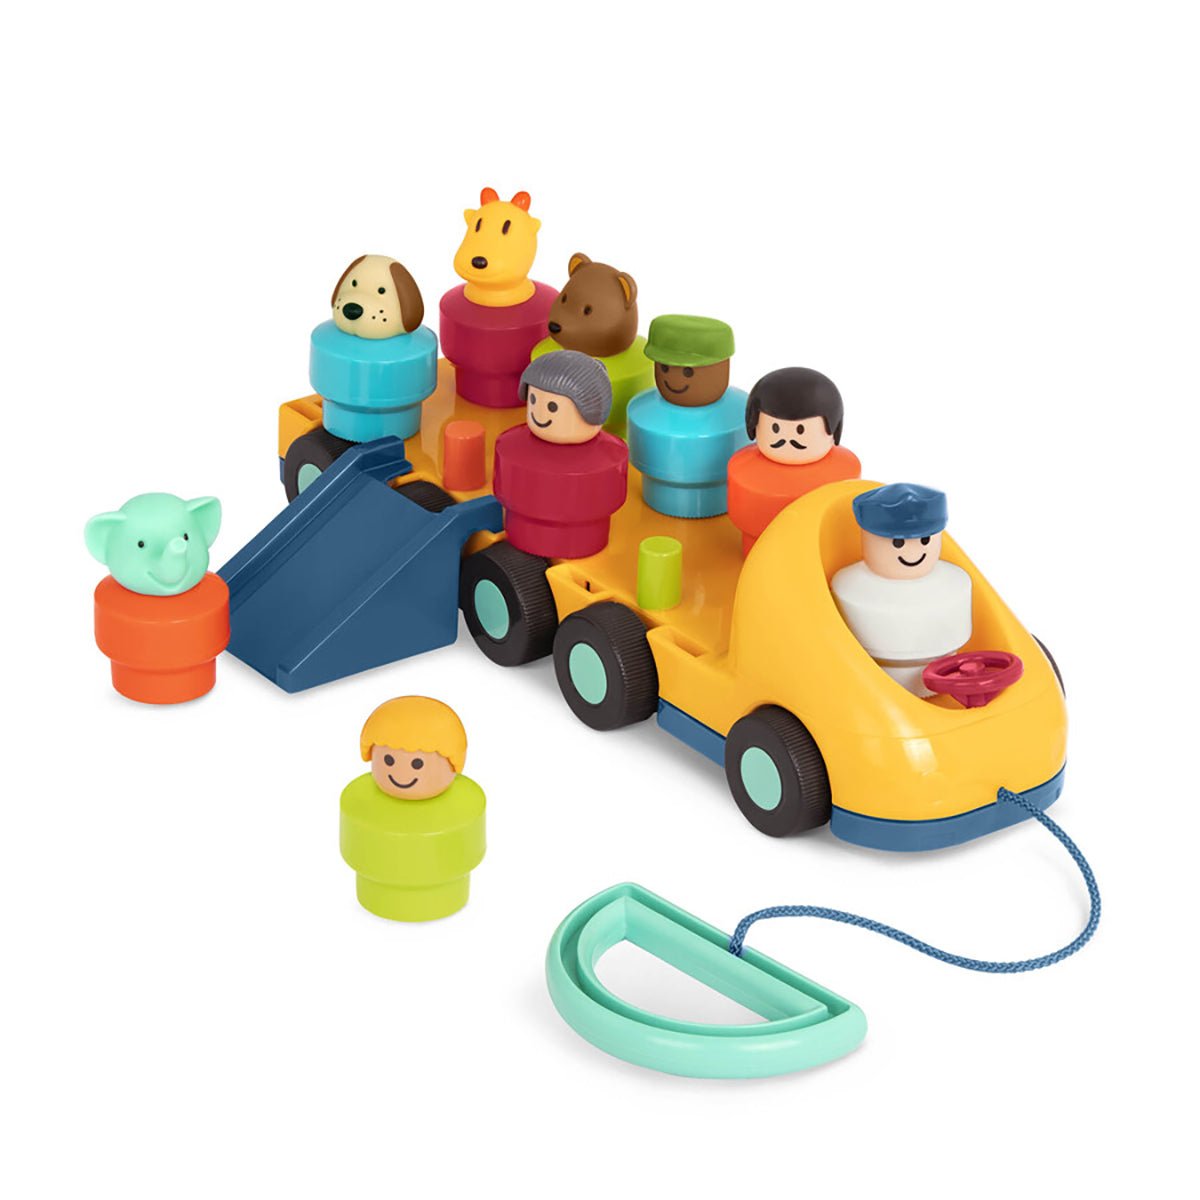 Busy Spinning Bus | Battat toys